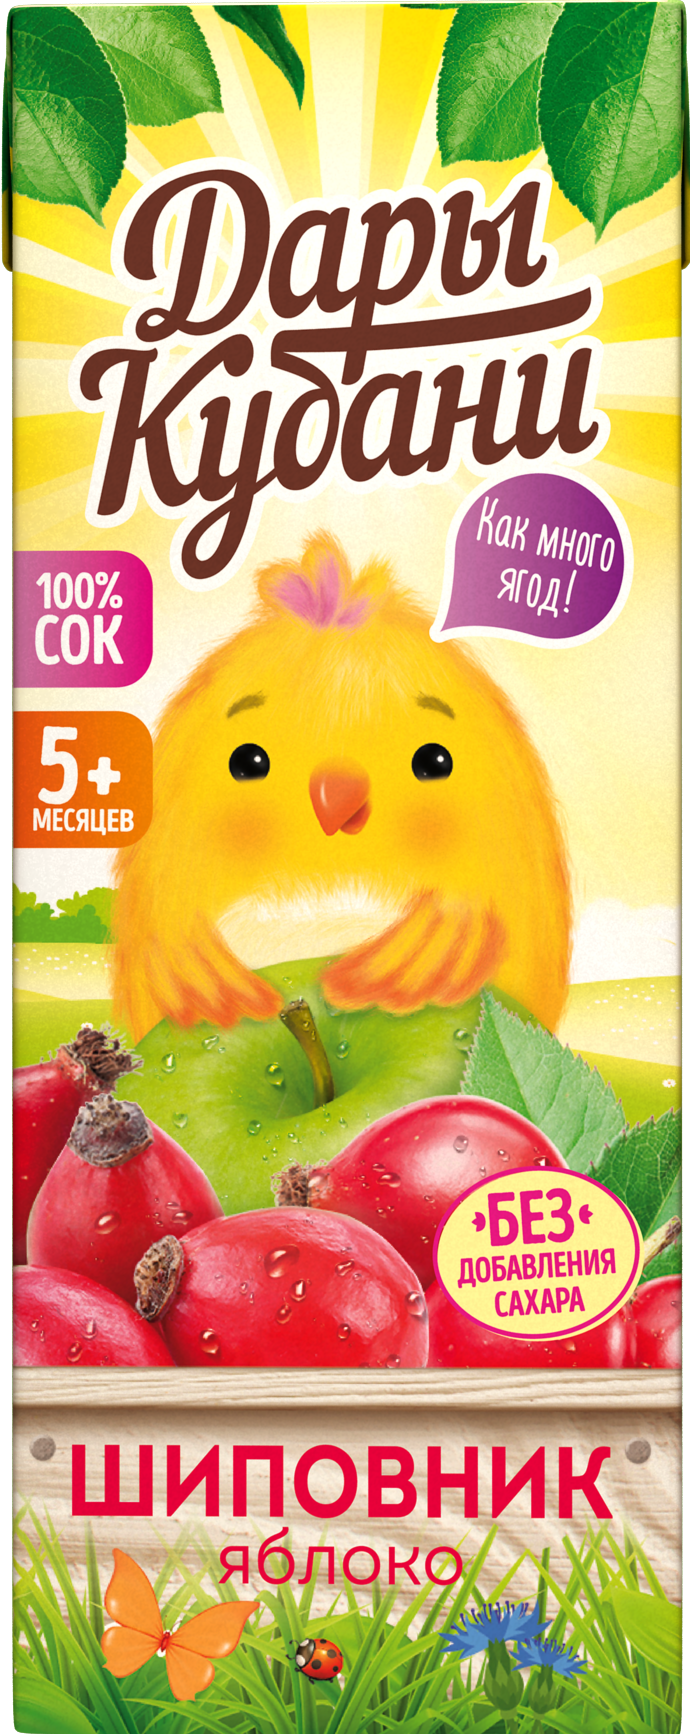 Сок детский Дары Кубани яблоко-шиповник без сахара осветленный 200 мл по 15 шт. - фото 6